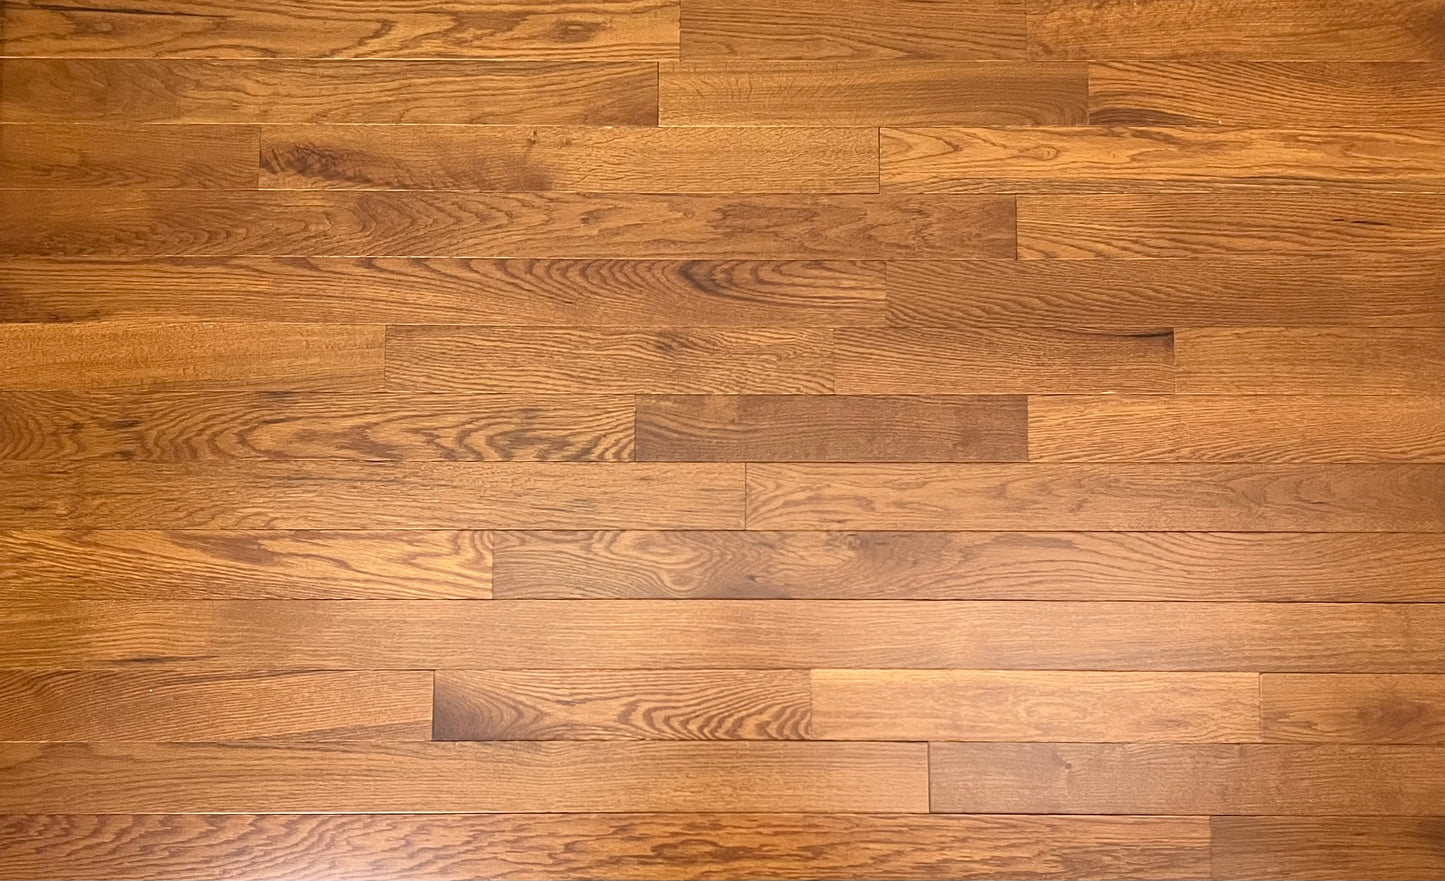 3 1/4" x 3/4" Solid White Oak Gunstock Hardwood Flooring